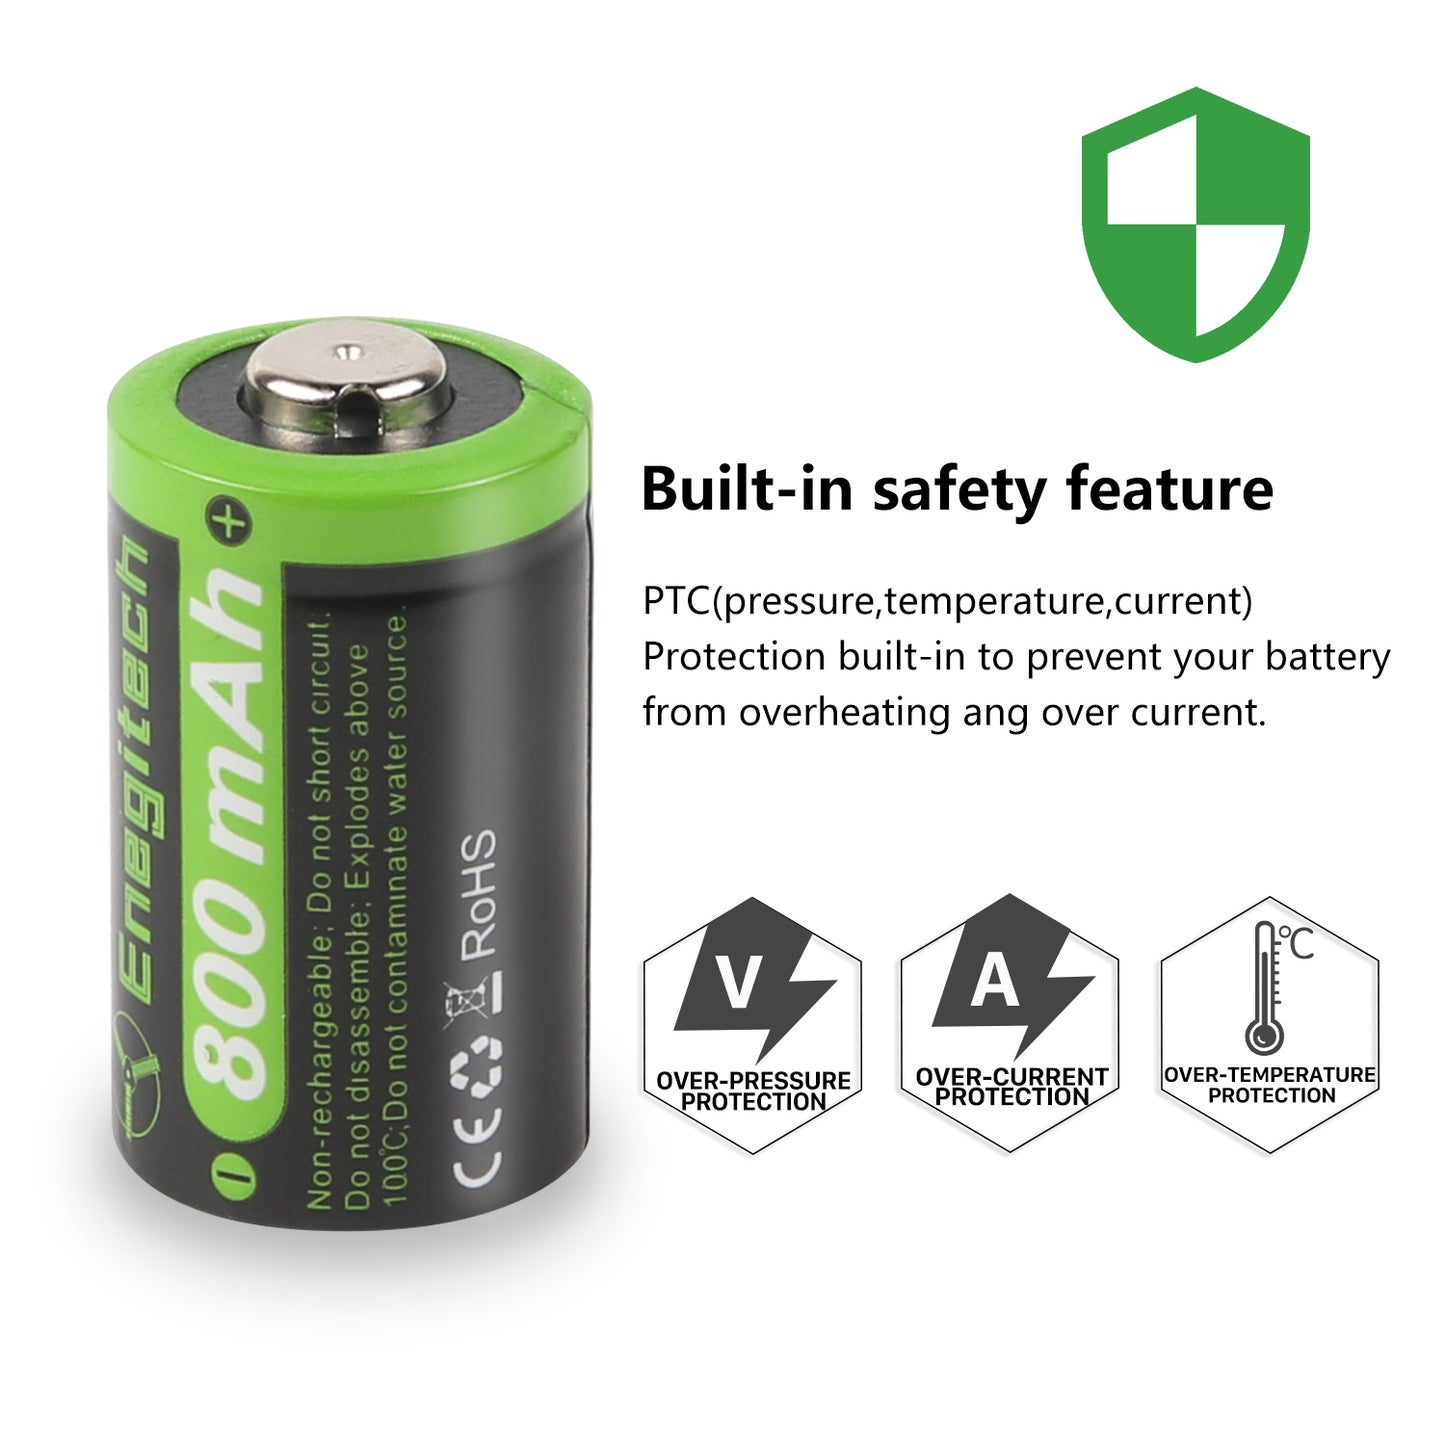 Enegitech CR2 Lithium Batteries - 6 Pack